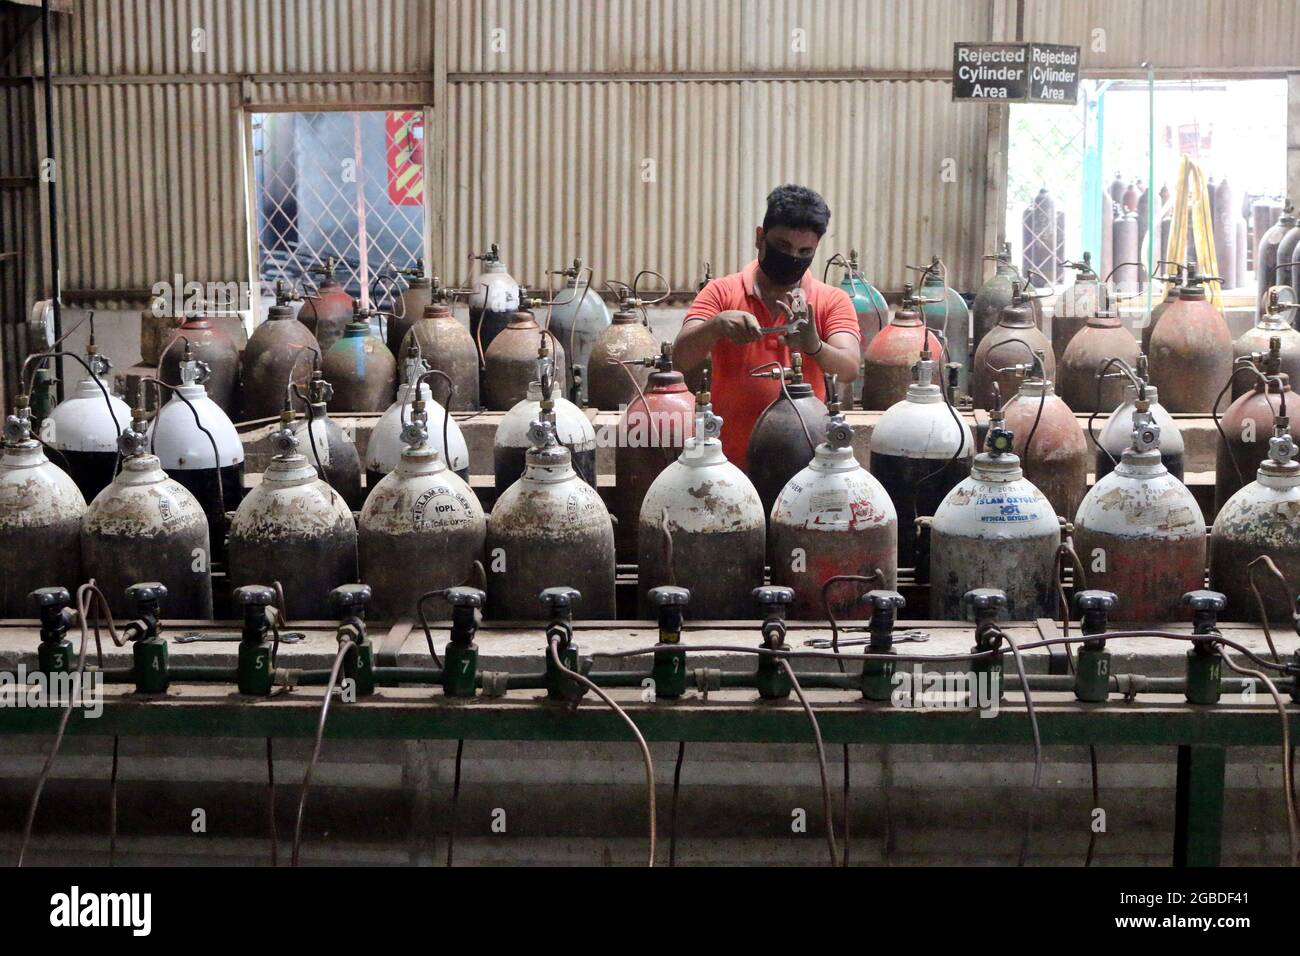 Dhaka, Bangladesch, 3. August 2021: Ein Arbeiter füllt Sauerstofftanks in einer Fabrik auf, um medizinische Sauerstoffversorgung an Krankenhäuser zur Behandlung von COVID-19-Patienten während einer zweiten Infektionswelle zu liefern, nachdem Indien den Export aufgrund einer Zunahme der COVID-19-positiven Fälle durch die Delta-Variante gestoppt hatte, die erstmals in Indien nachgewiesen wurde. Kredit: Habibur Rahman / Eyepix Gruppe/Alamy Live Nachrichten Stockfoto